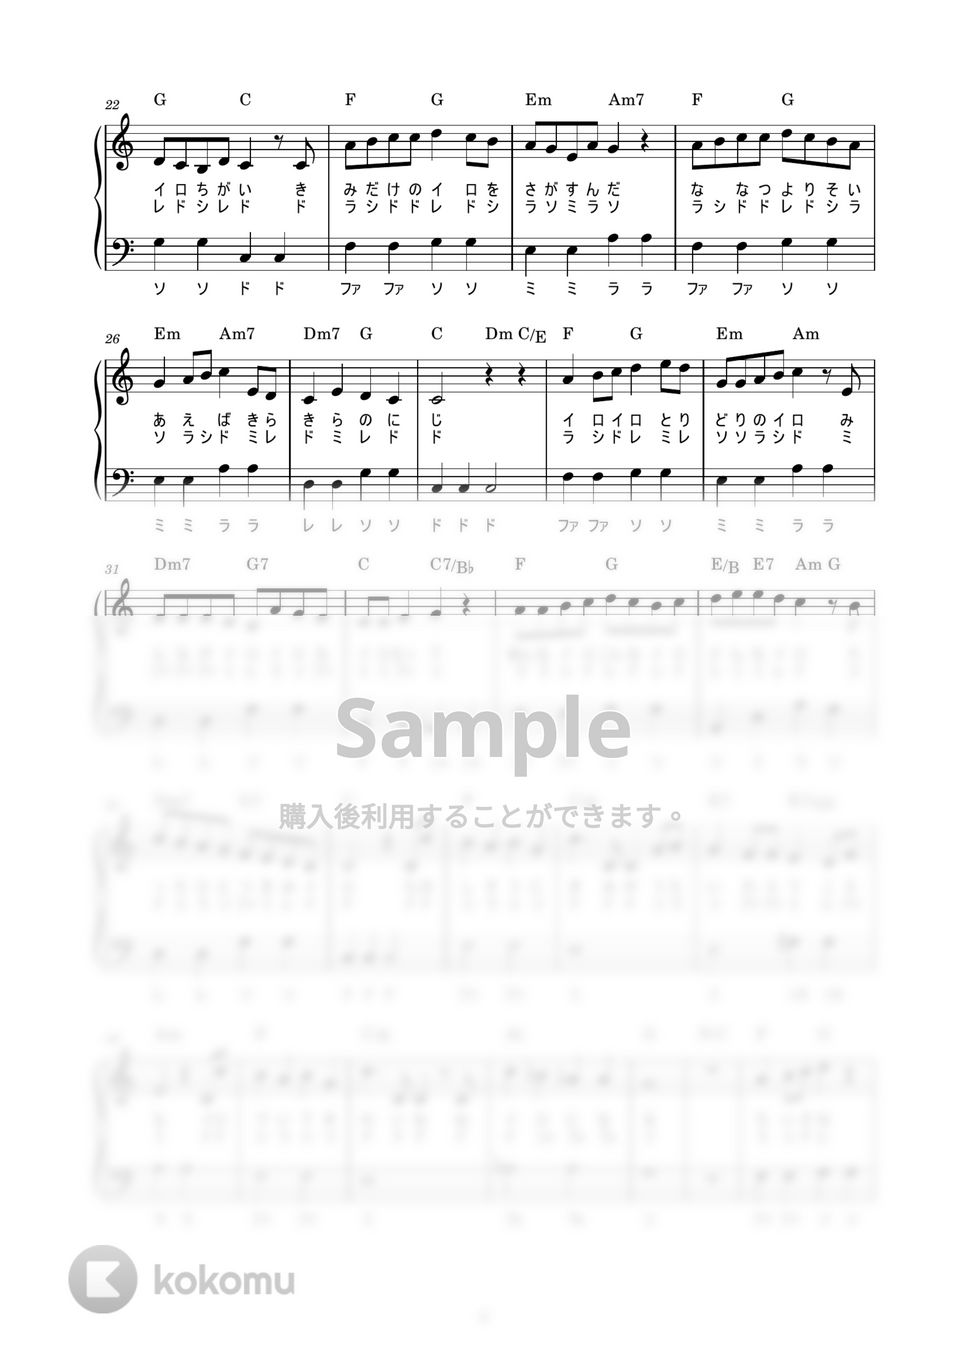 きみイロ (かんたん / 歌詞付き / ドレミ付き / 初心者) by piano.tokyo